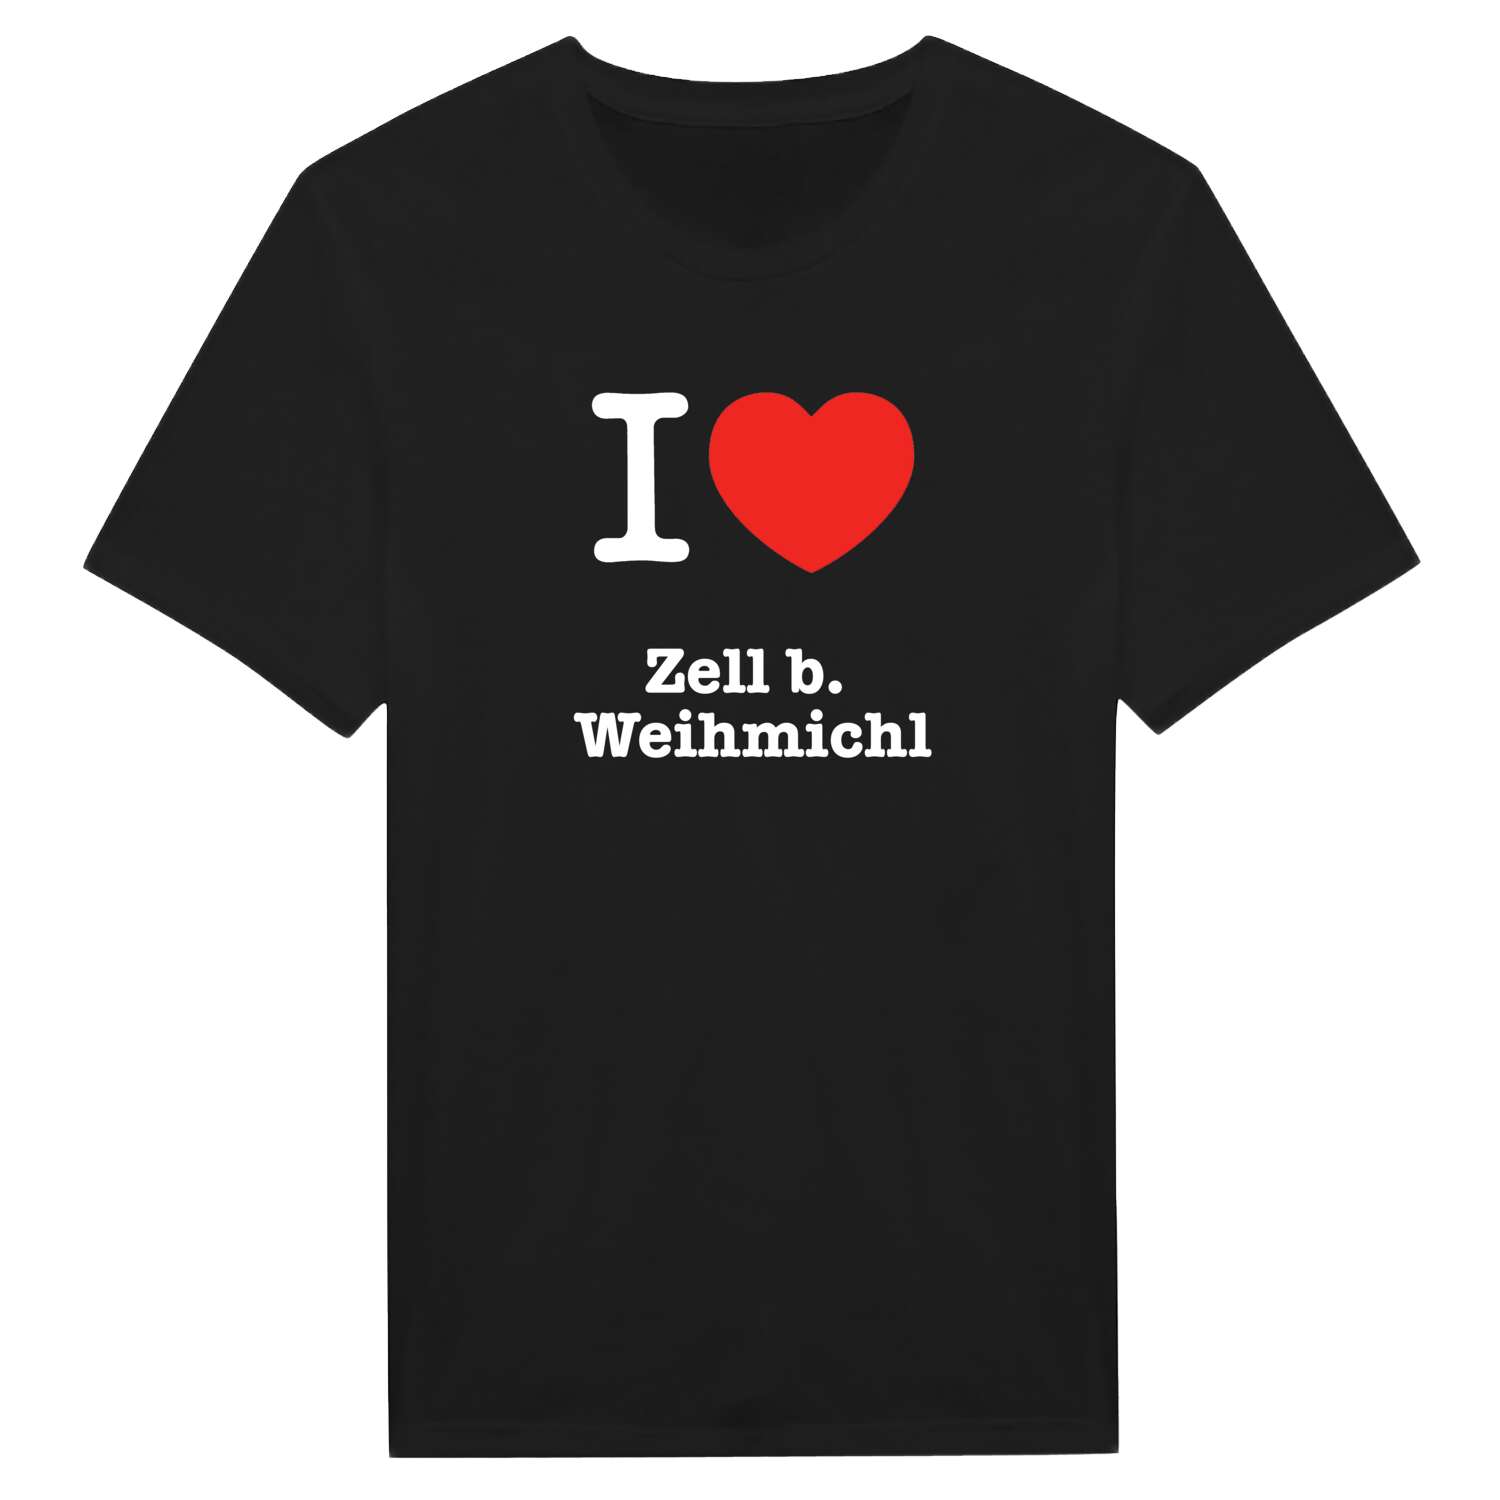 Zell b. Weihmichl T-Shirt »I love«